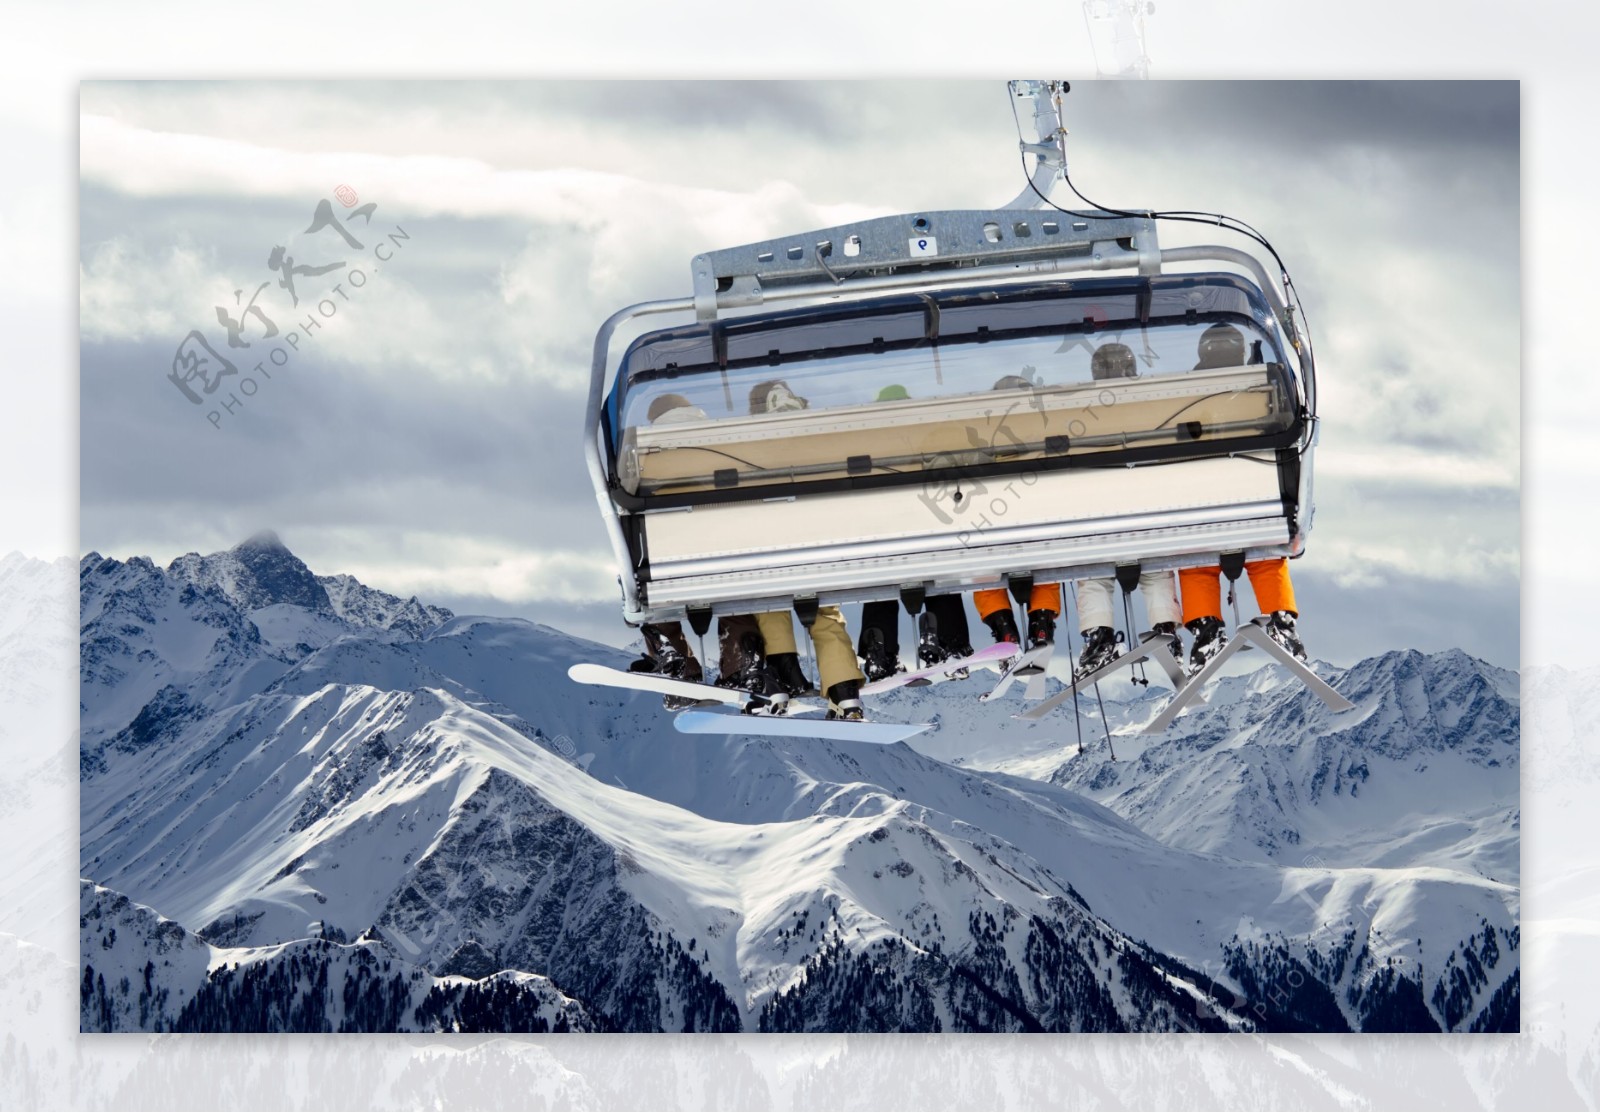 滑雪升降机与雪山风景图片